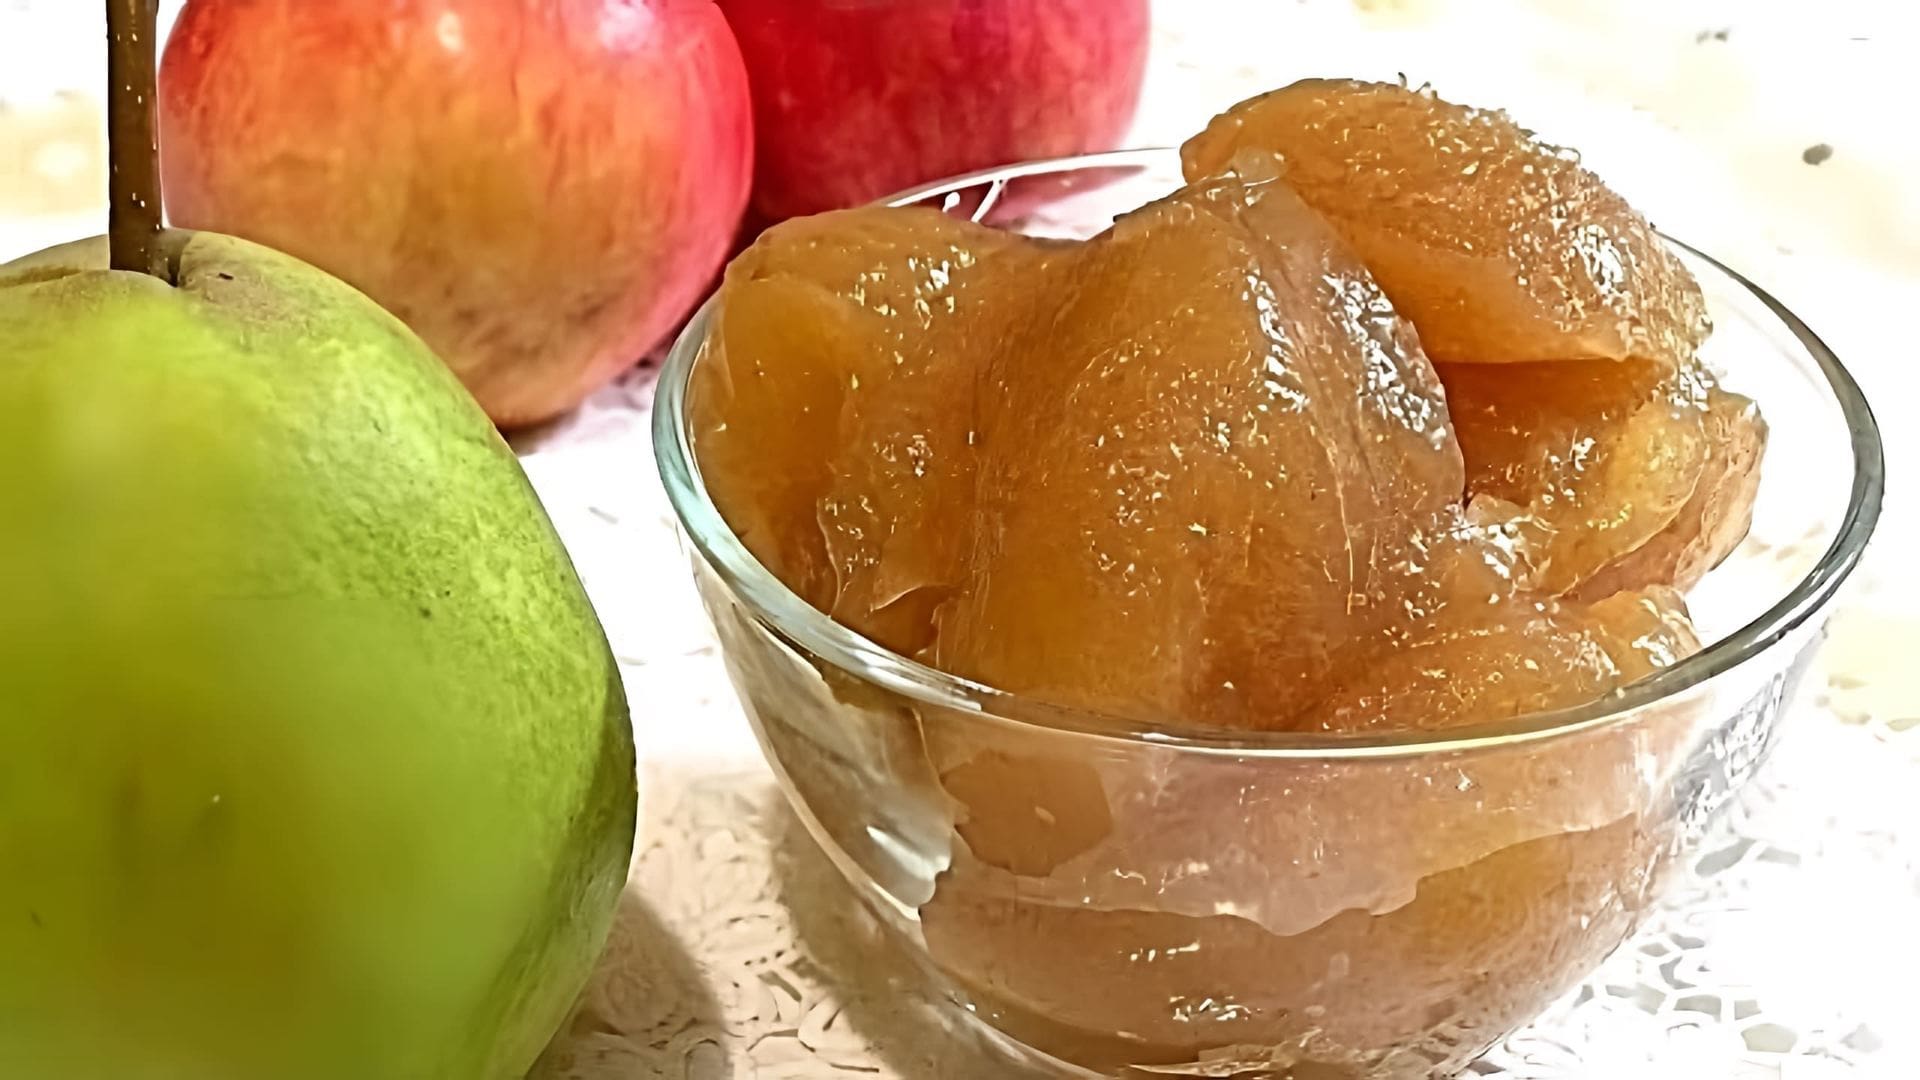 В этом видео демонстрируется процесс приготовления ароматного повидла из яблок и груш